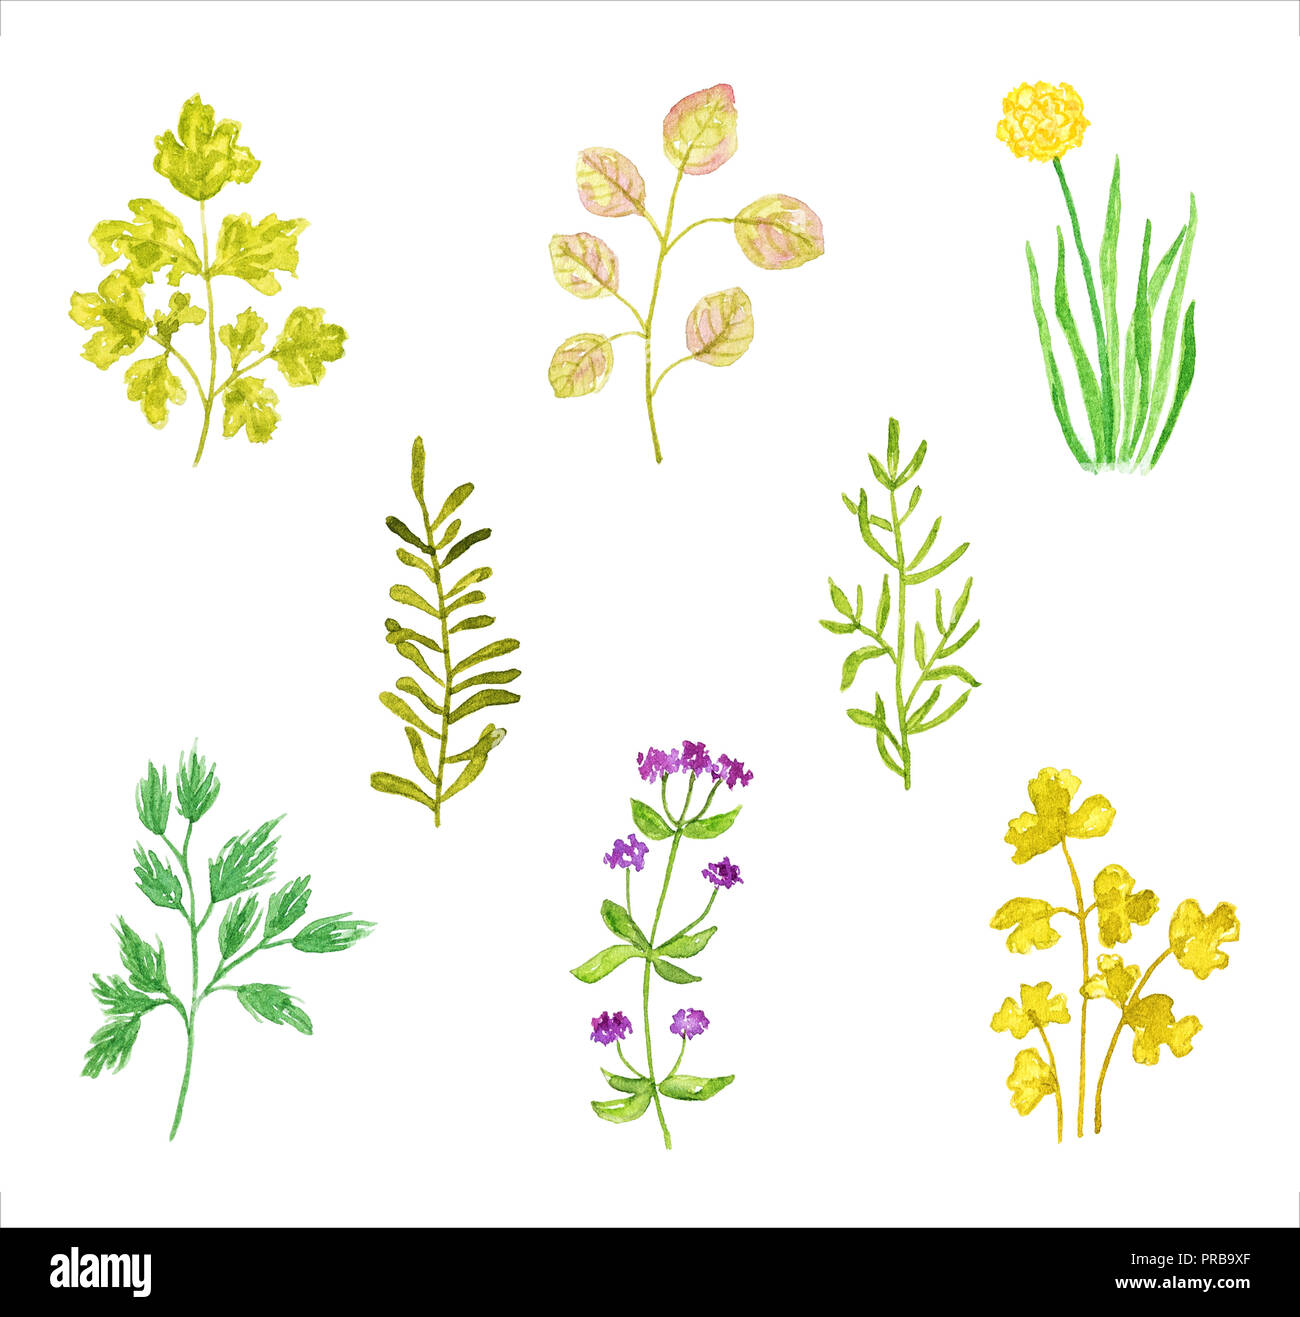 Festlegen verschiedener Kräuter und Pflanzen, Aquarell Hand gezeichnet und gemalt, isoliert auf weißem Hintergrund. Teil 1 Stockfoto